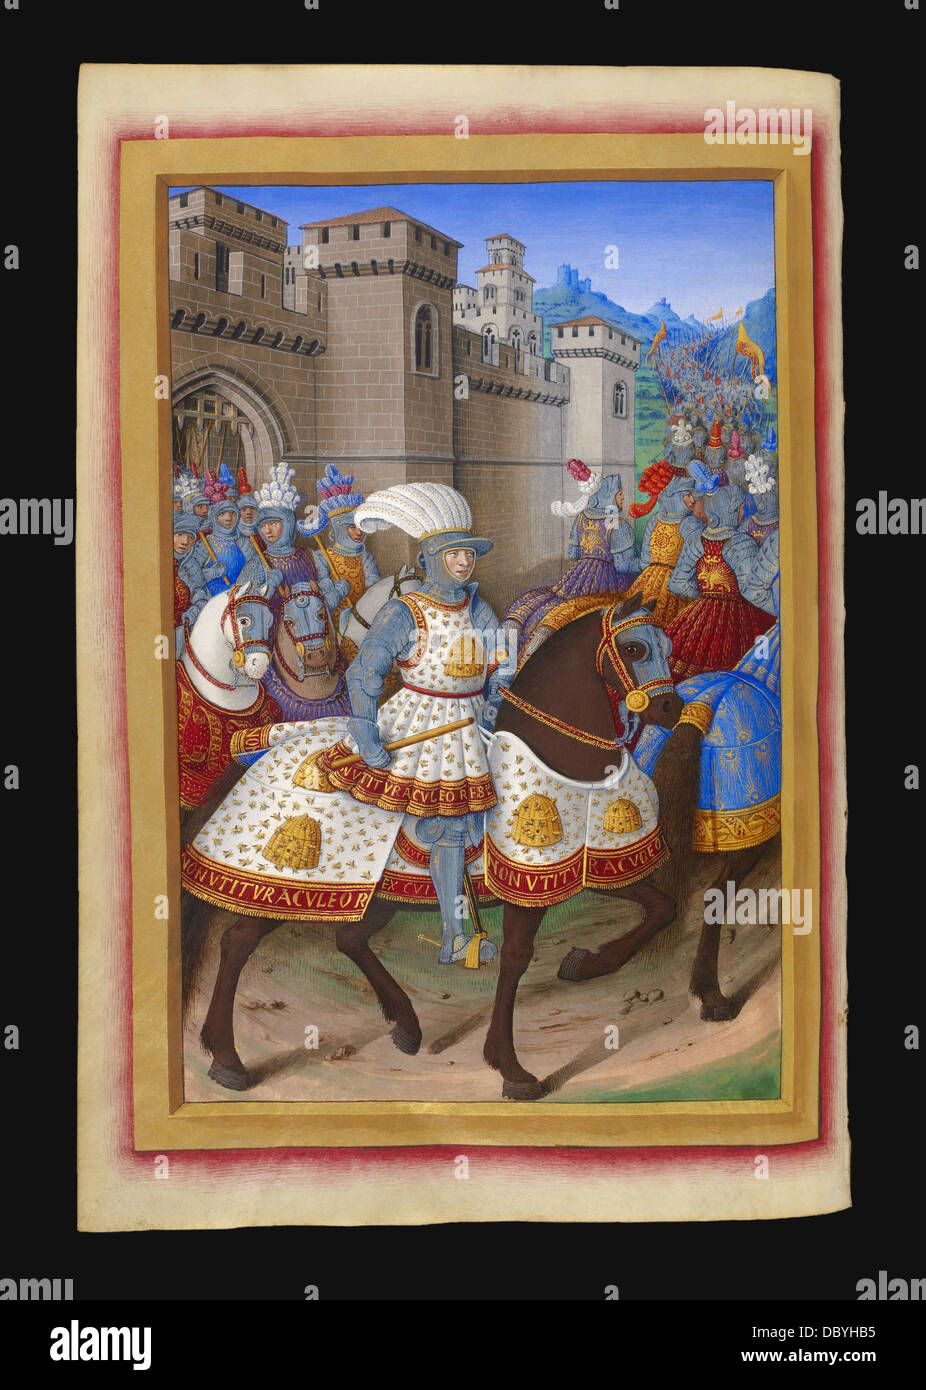 König von Frankreich Ludwig XII Ausritte, die Festung Alessandria mit seiner Armee, um die Stadt Genua anzugreifen rebellieren agai Stockfoto